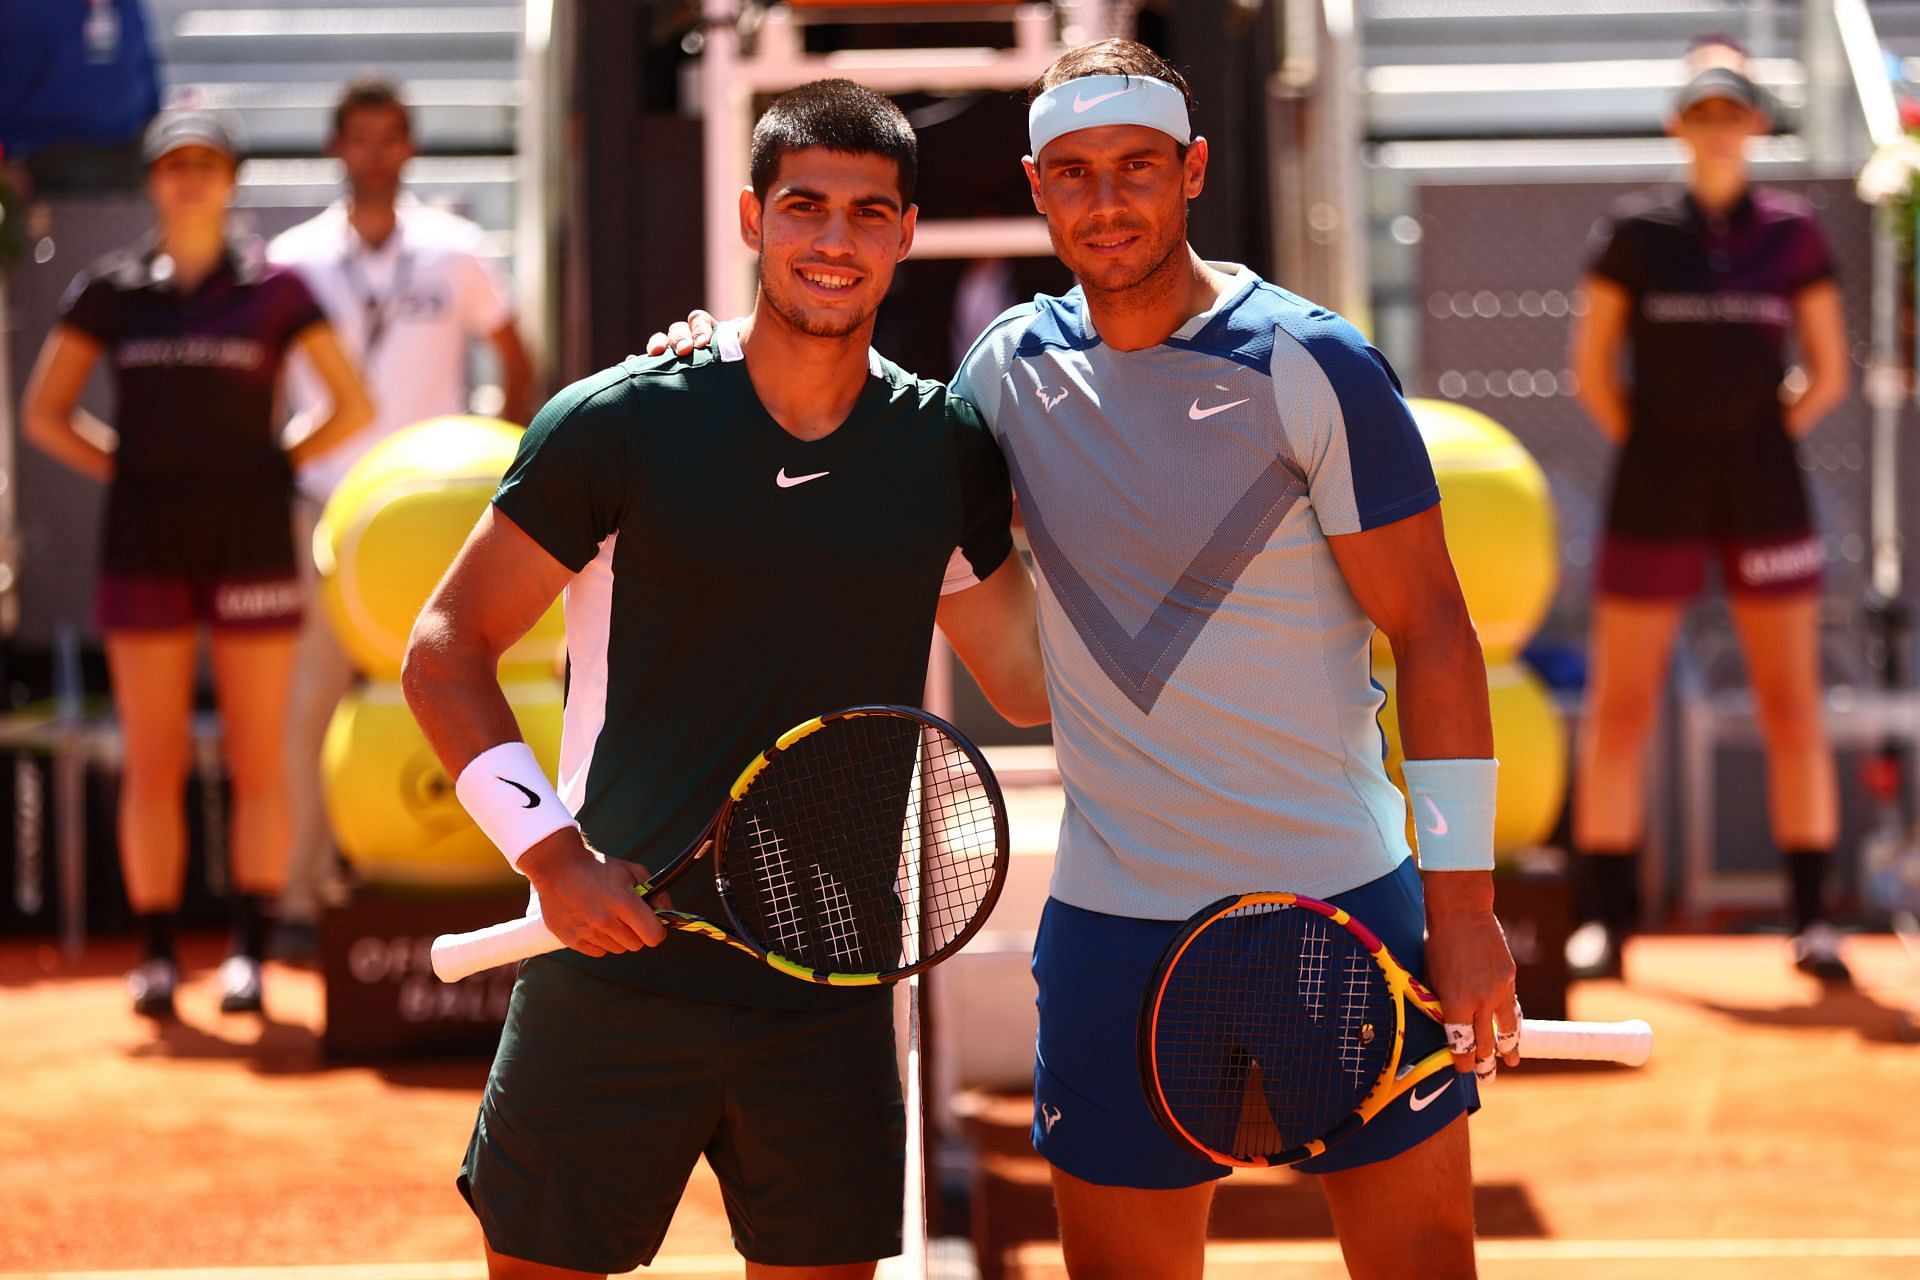 Rafael Nadal and Carlos Alcaraz at the Mutua Madrid Open